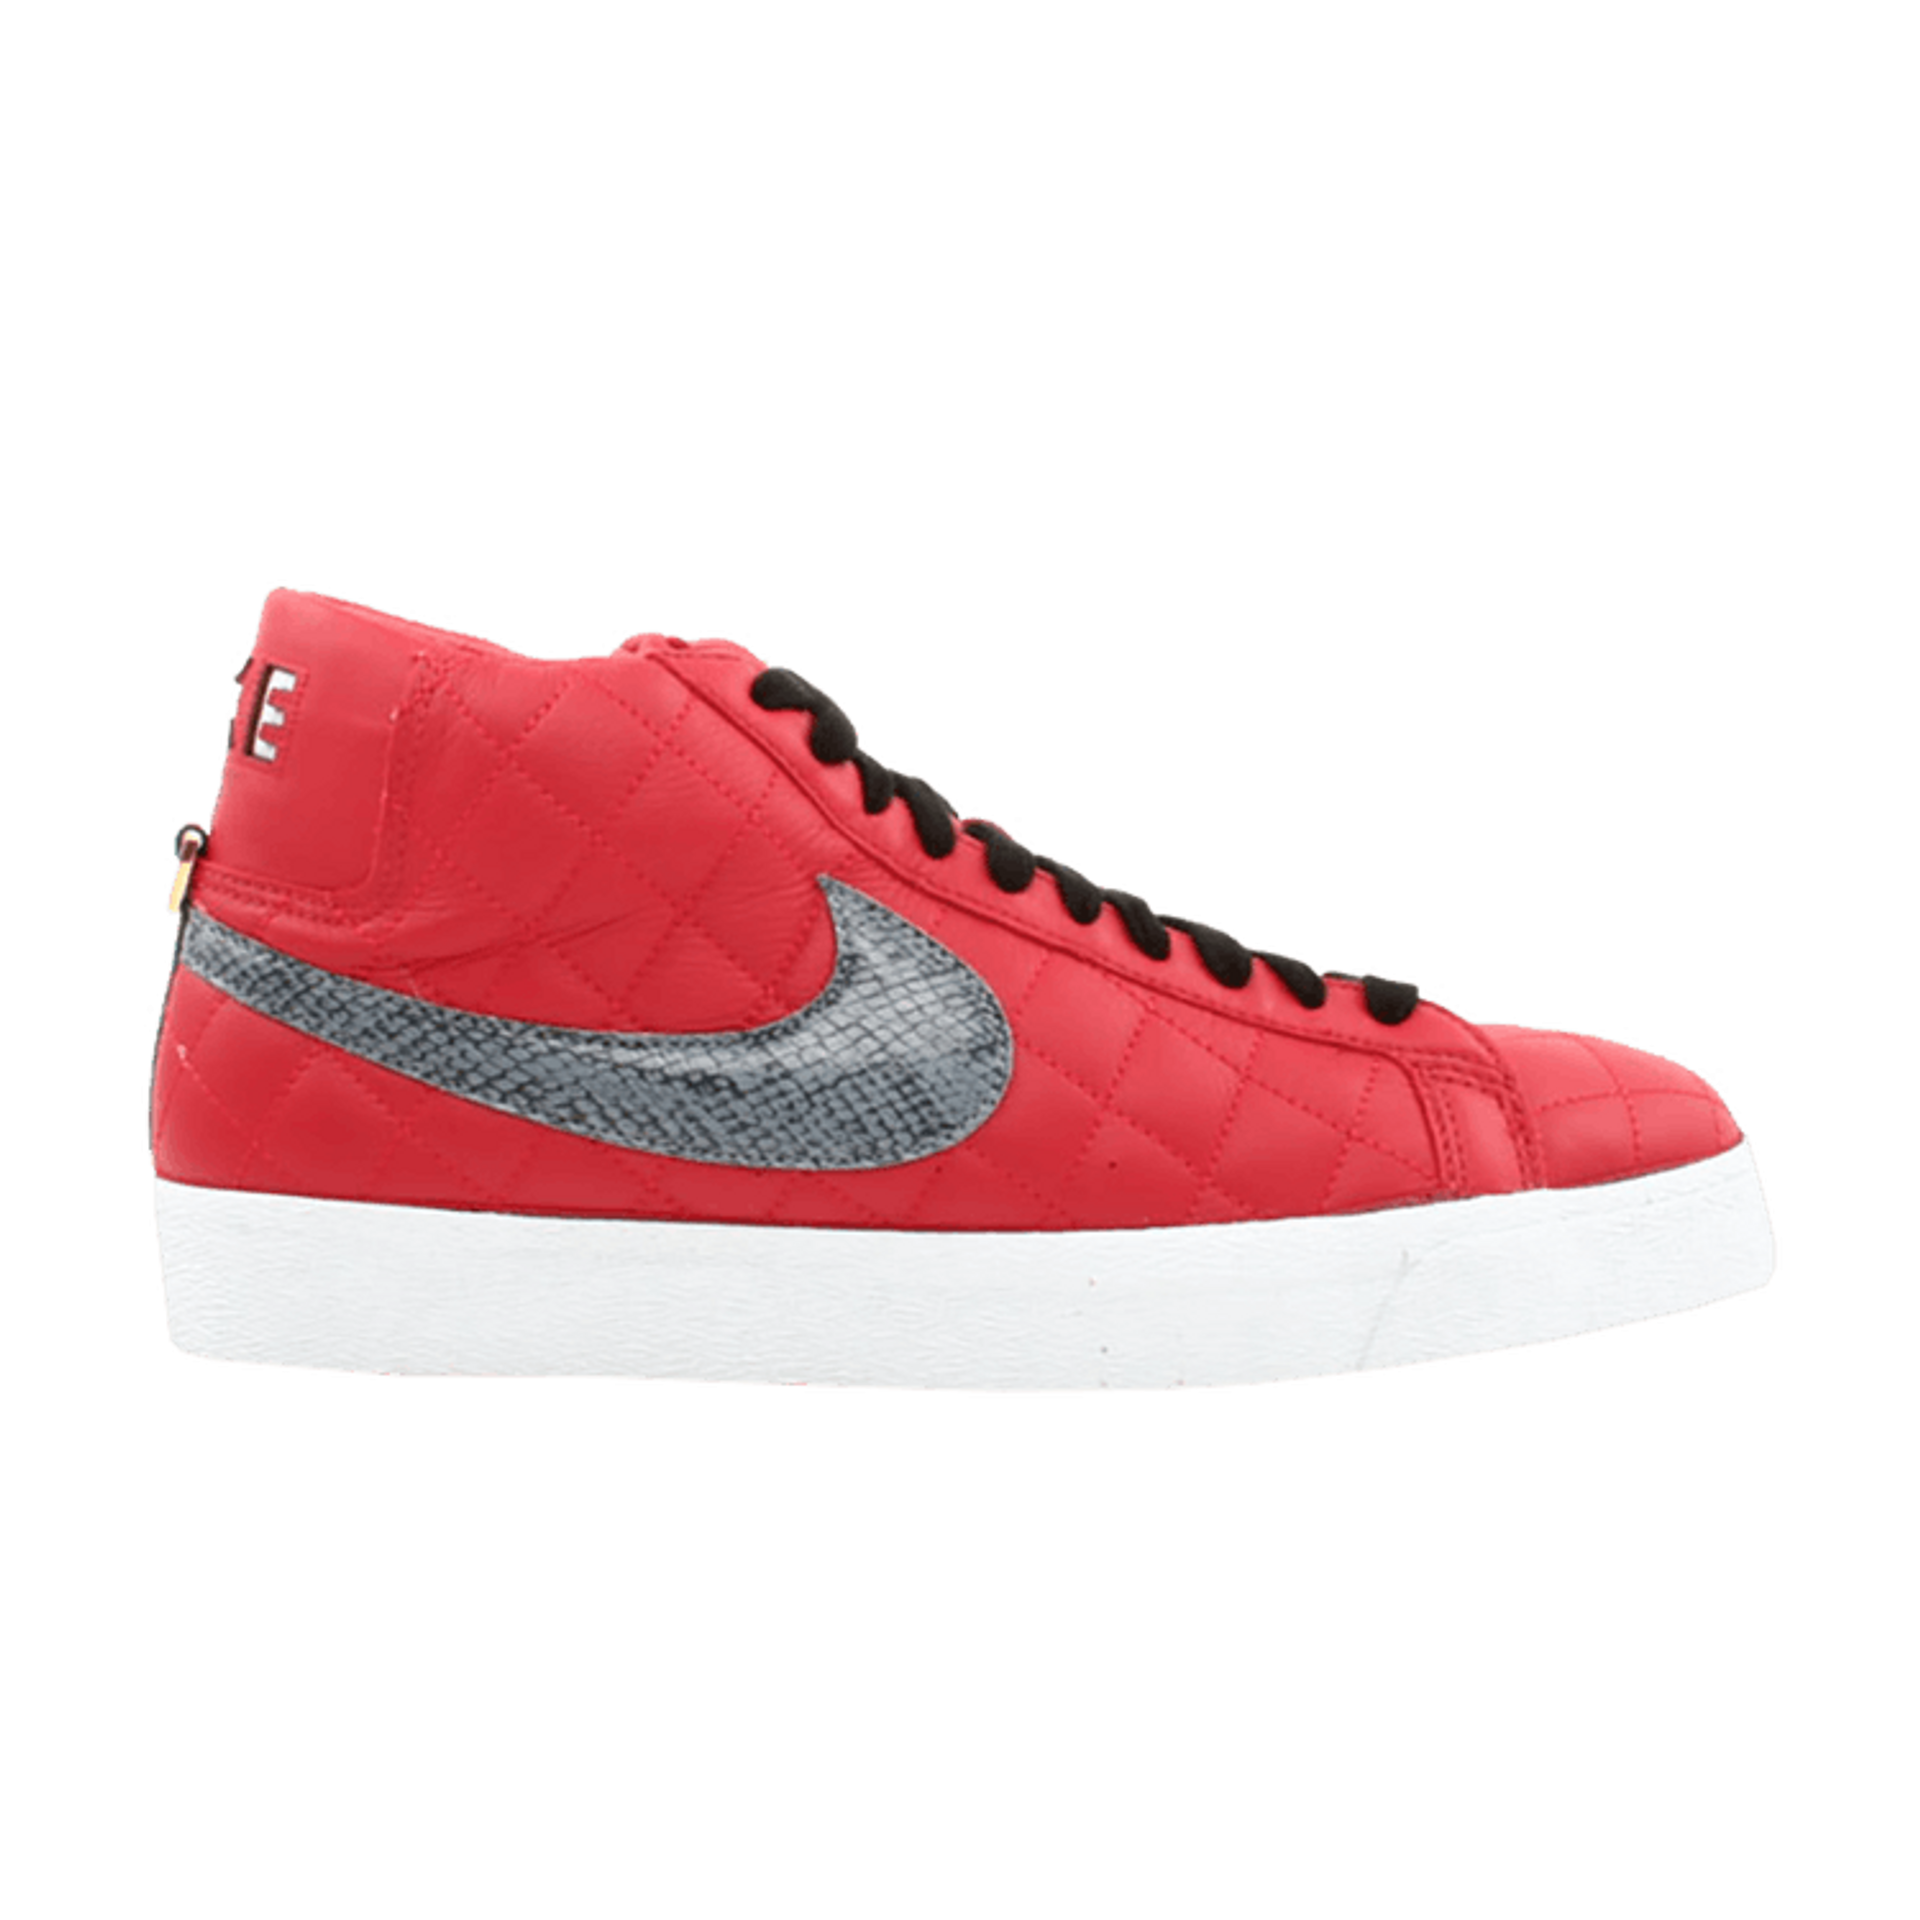 Supreme x Nike Blazer SB 'Varsity Red'